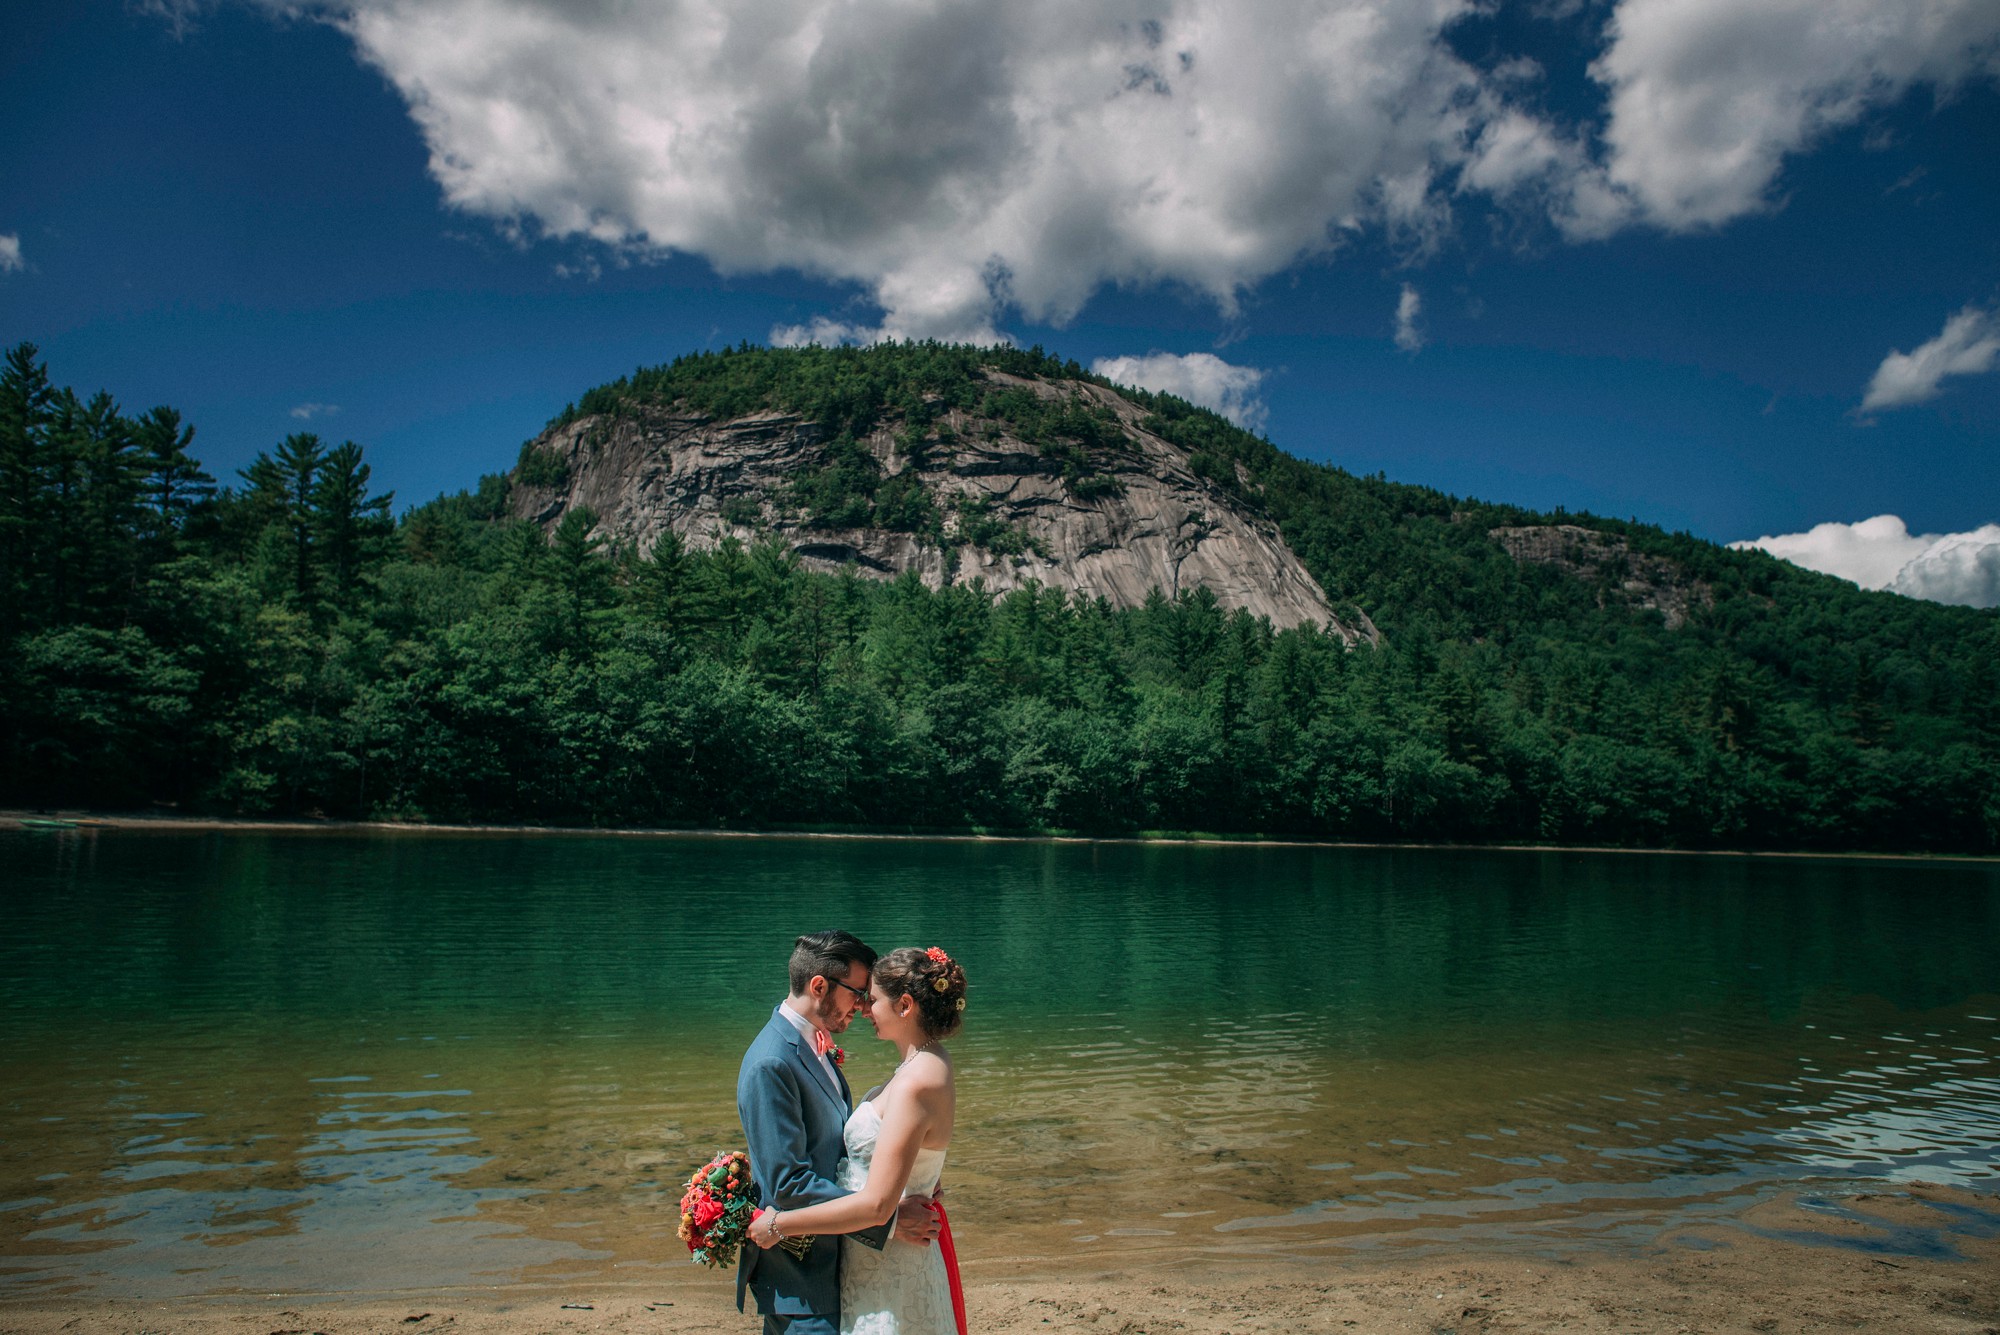 Aimee & Matt's White Mountain Resort Wedding » Love & Perry ...